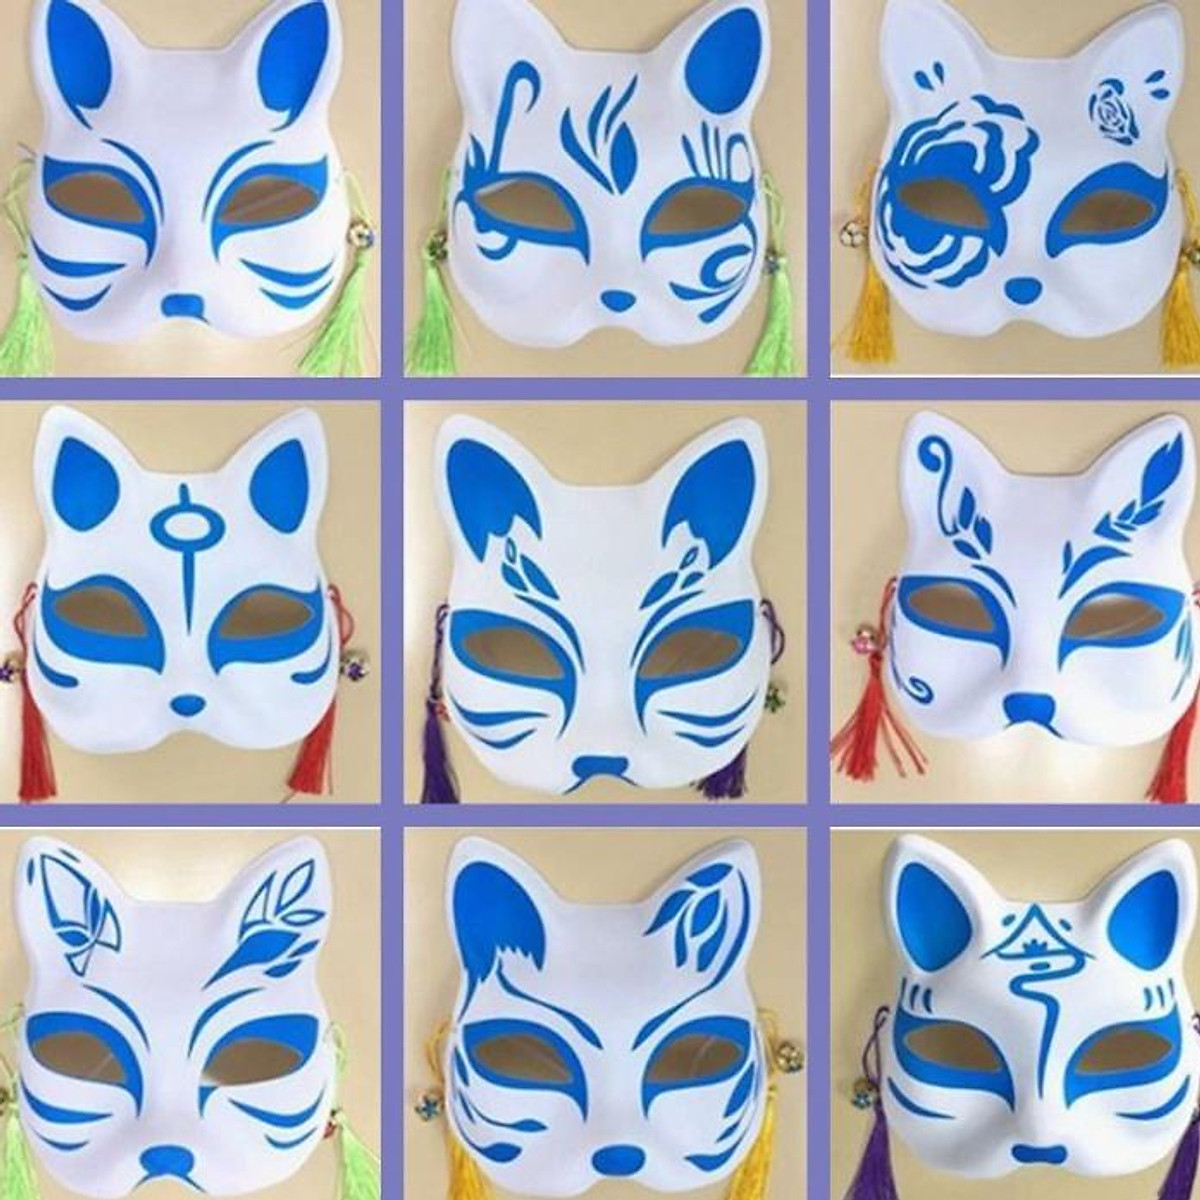 Mặt nạ cáo/mèo Nhật Bản là mẫu mặt nạ rất phổ biến và được yêu thích trong nghệ thuật mặt nạ Nhật Bản. Bạn có muốn khám phá những mẫu mặt nạ cáo/mèo Nhật Bản đẹp và độc đáo nhất không? Hãy xem hình ảnh liên quan đến từ khóa này để khám phá những ý tưởng và cảm nhận sức hút của nghệ thuật mặt nạ Nhật Bản.